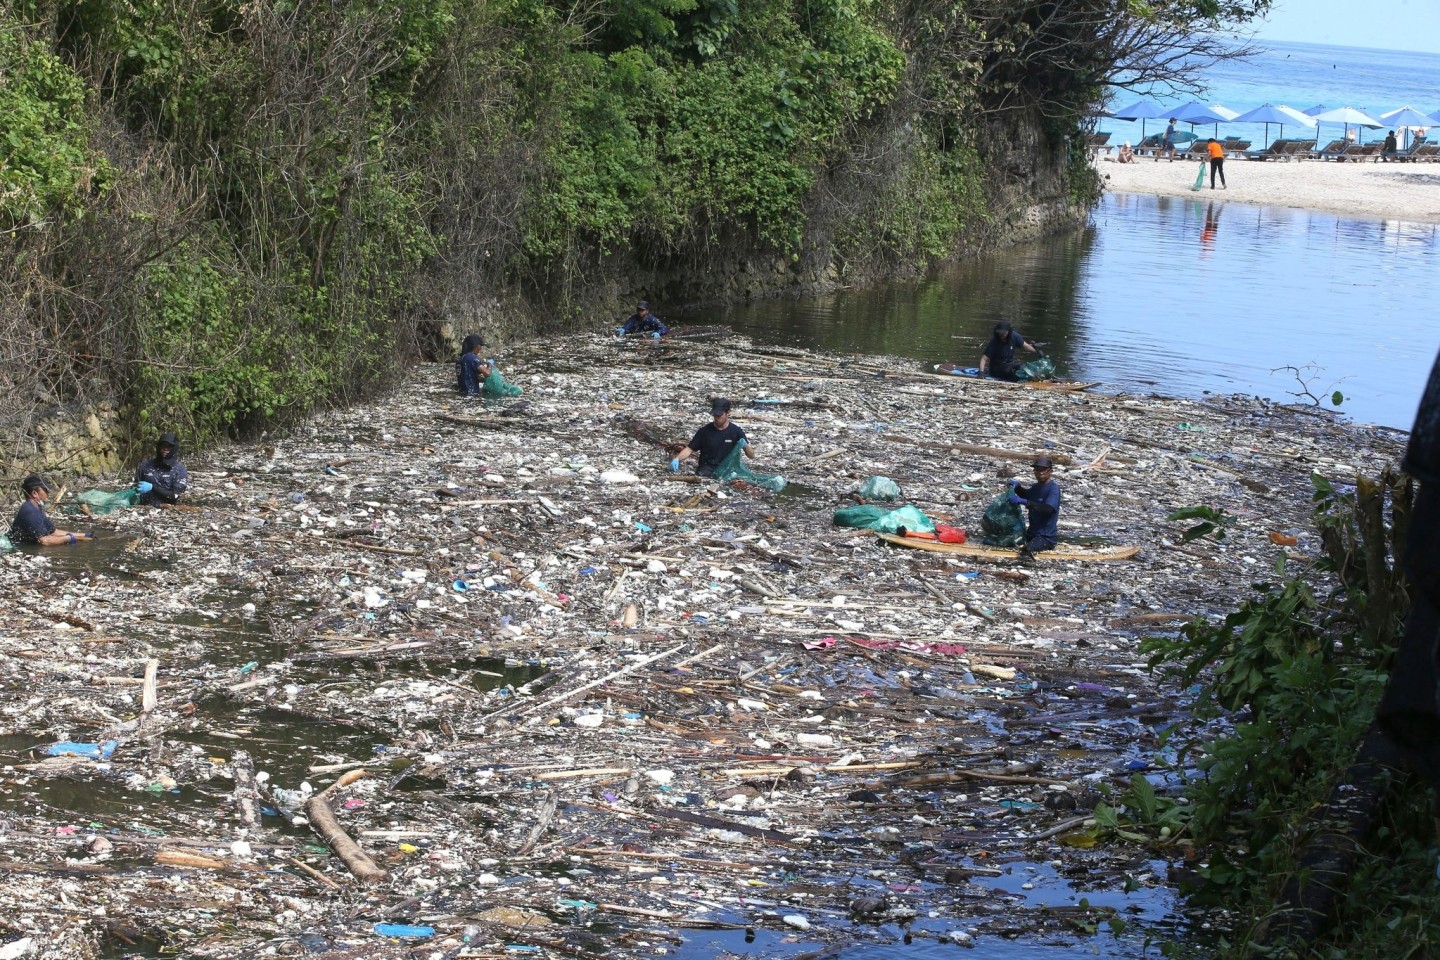 Freiwillige sammeln in Pecatu auf Bali Müll aus einem Fluss. Die Abfall-Flut, die viele Strände und Flussufer seit Tagen überrollt, ist erschreckend.